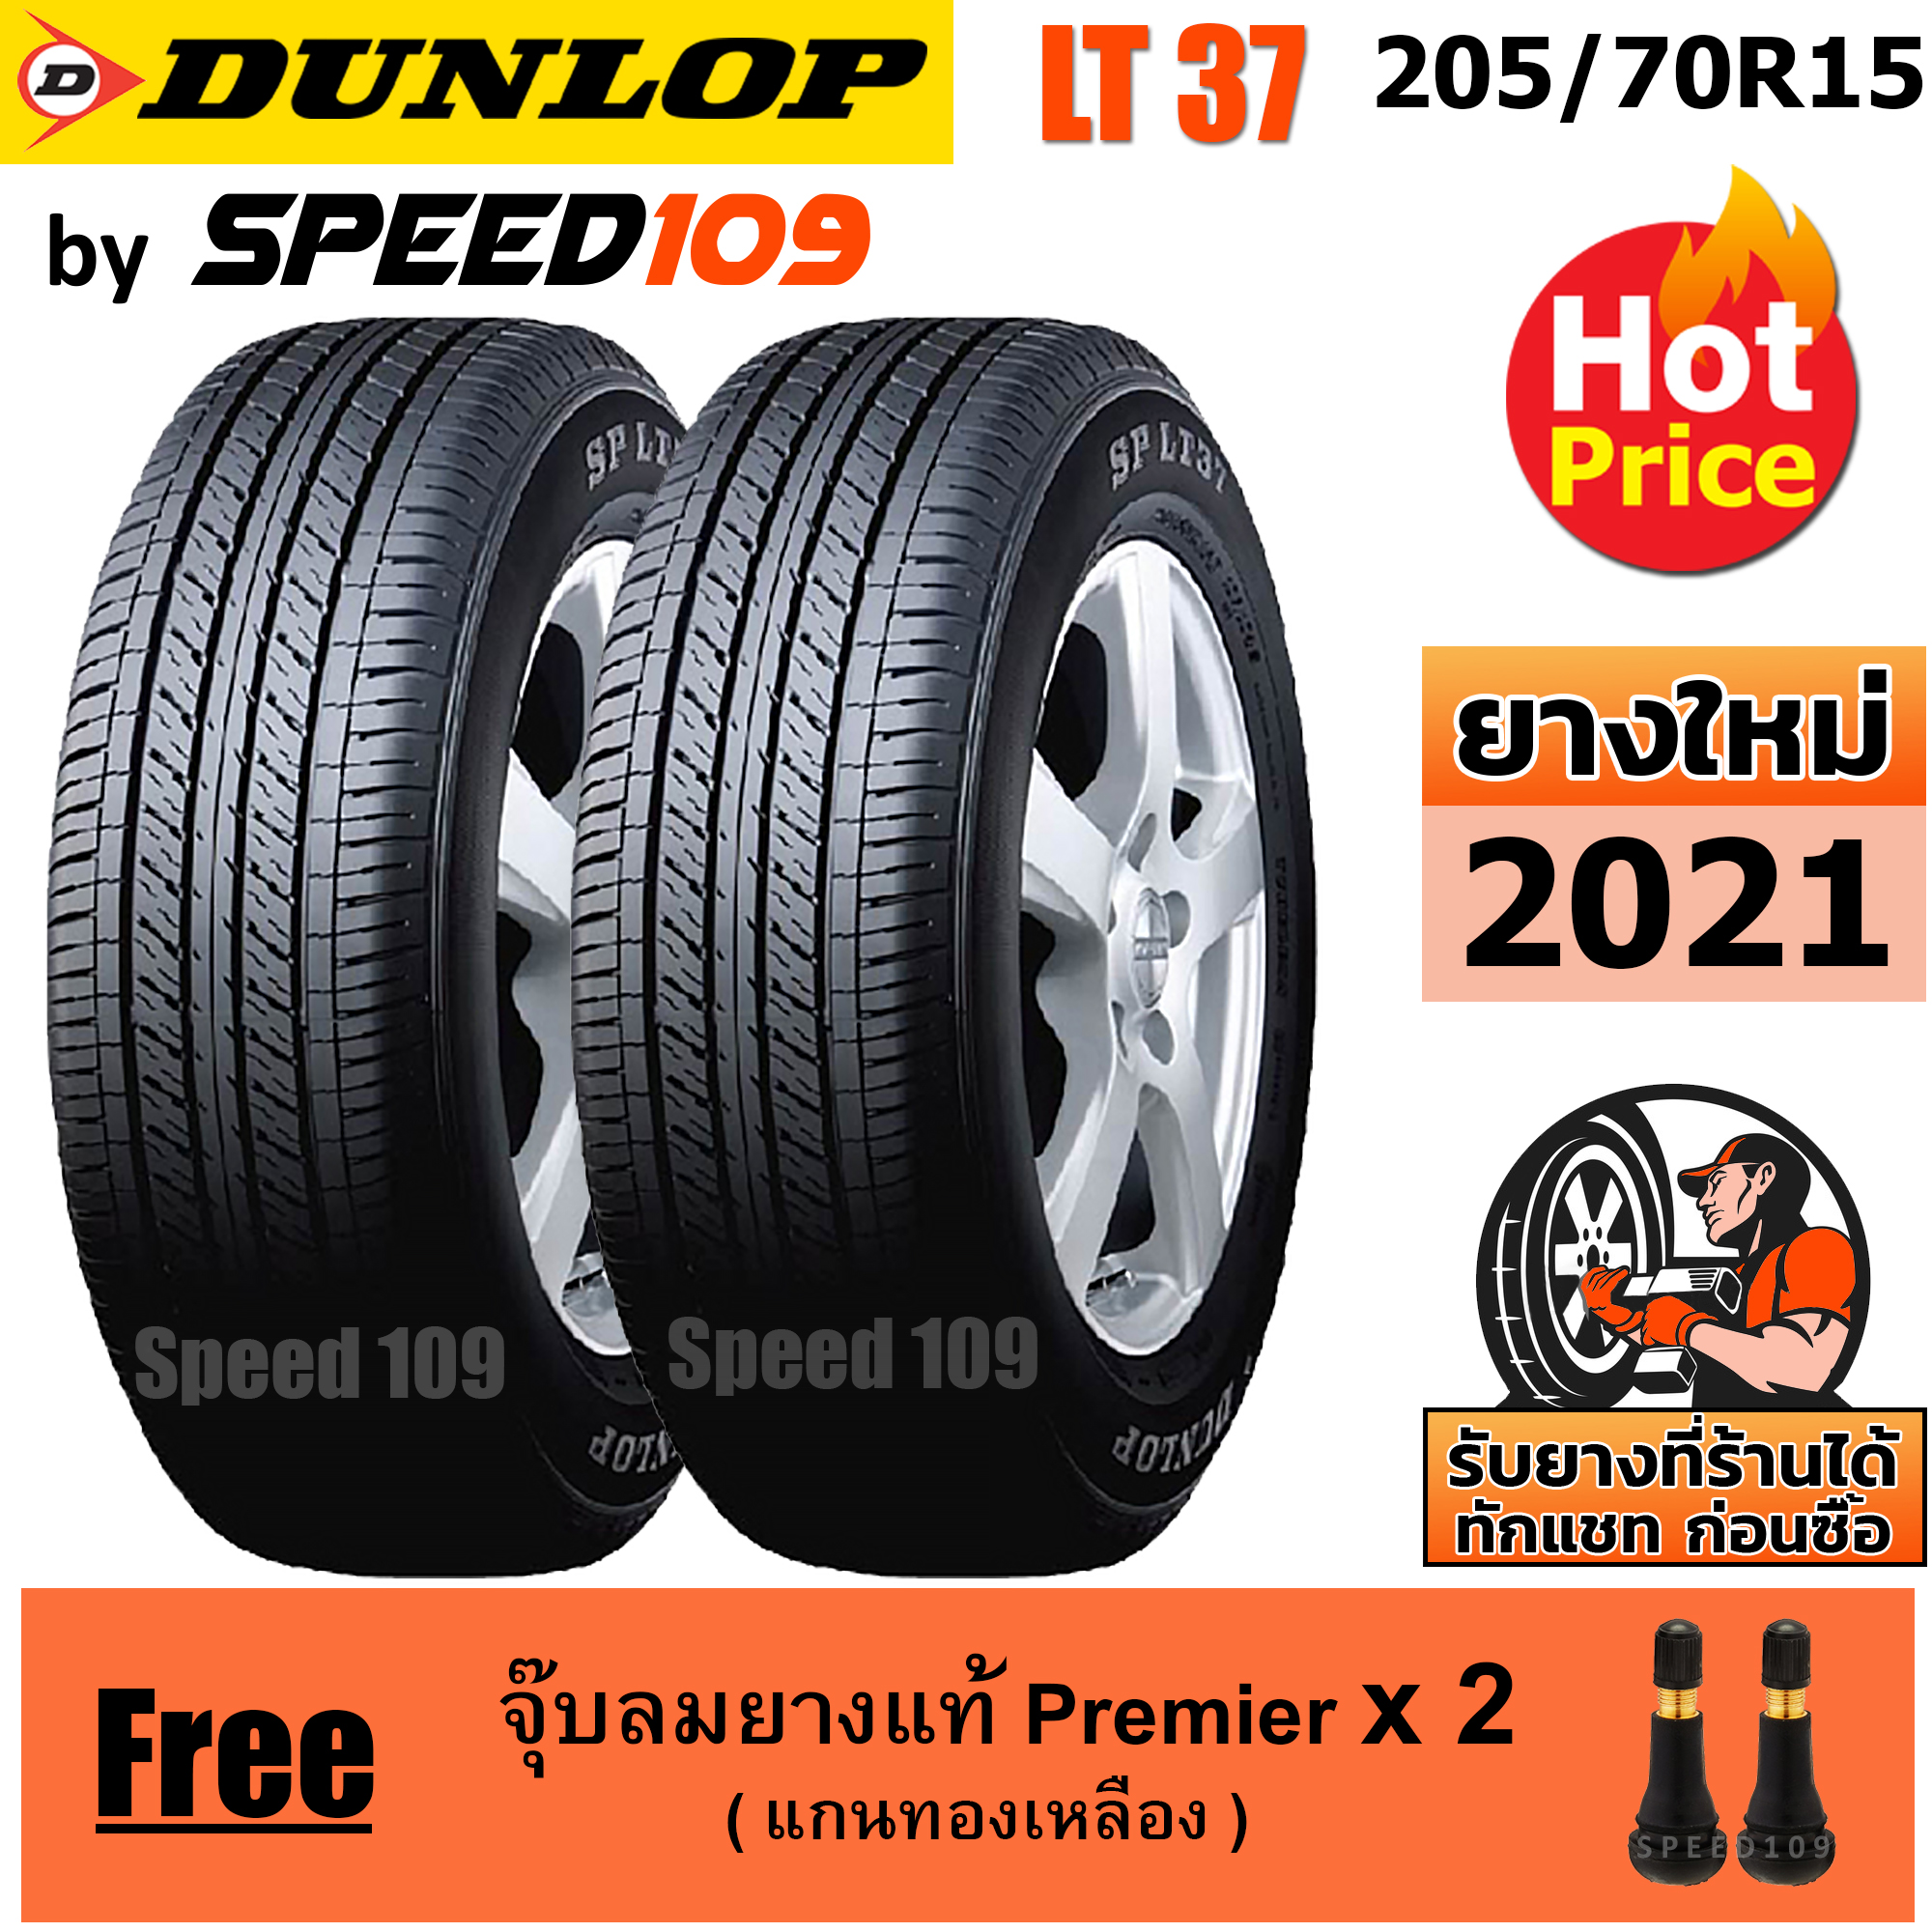 DUNLOP ยางรถยนต์ ขอบ 15 ขนาด 205/70R15 รุ่น SP LT37 - 2 เส้น (ปี 2021)